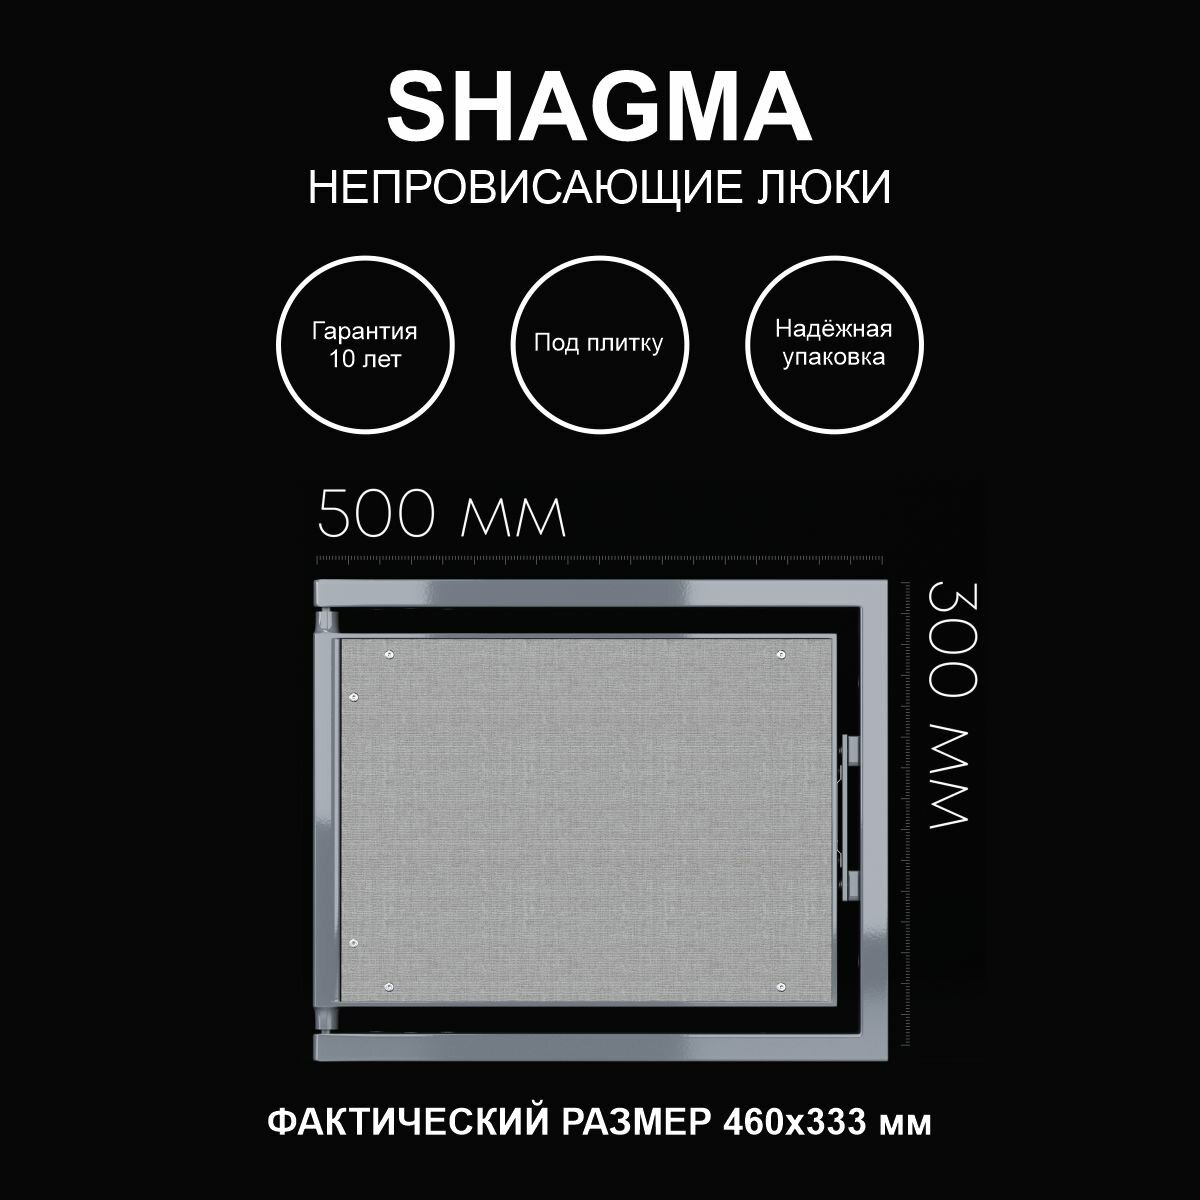 Люк ревизионный под плитку 500х300 мм одностворчатый сантехнический настенный фактический размер 460(ширина) х 333(высота) мм SHAGMA